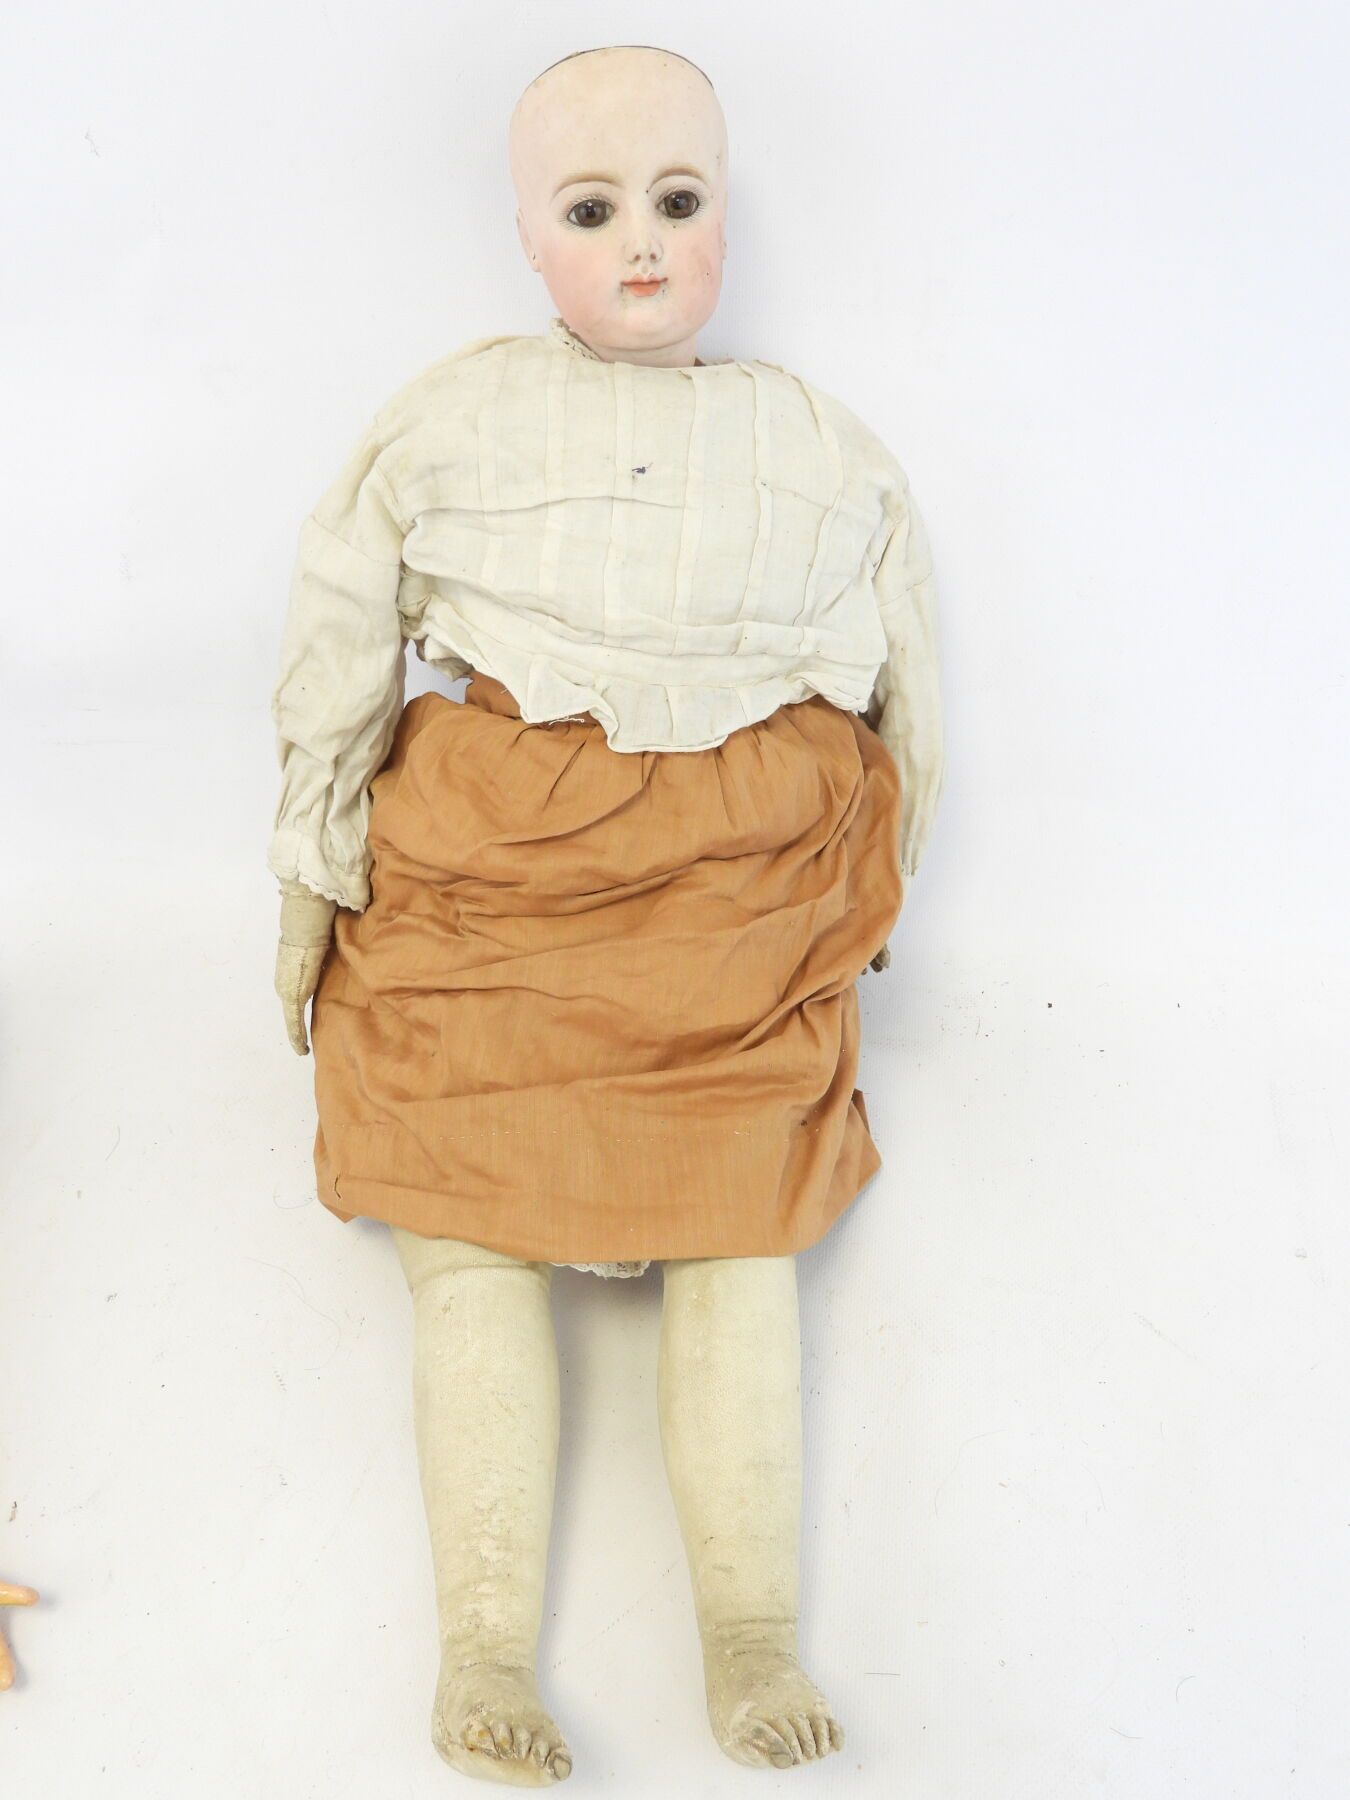 Null 娃娃的头部是仿制的，眼睛是固定的，嘴巴是闭着的，耳朵是穿孔的。身体在皮肤里。高度：66厘米。裂缝